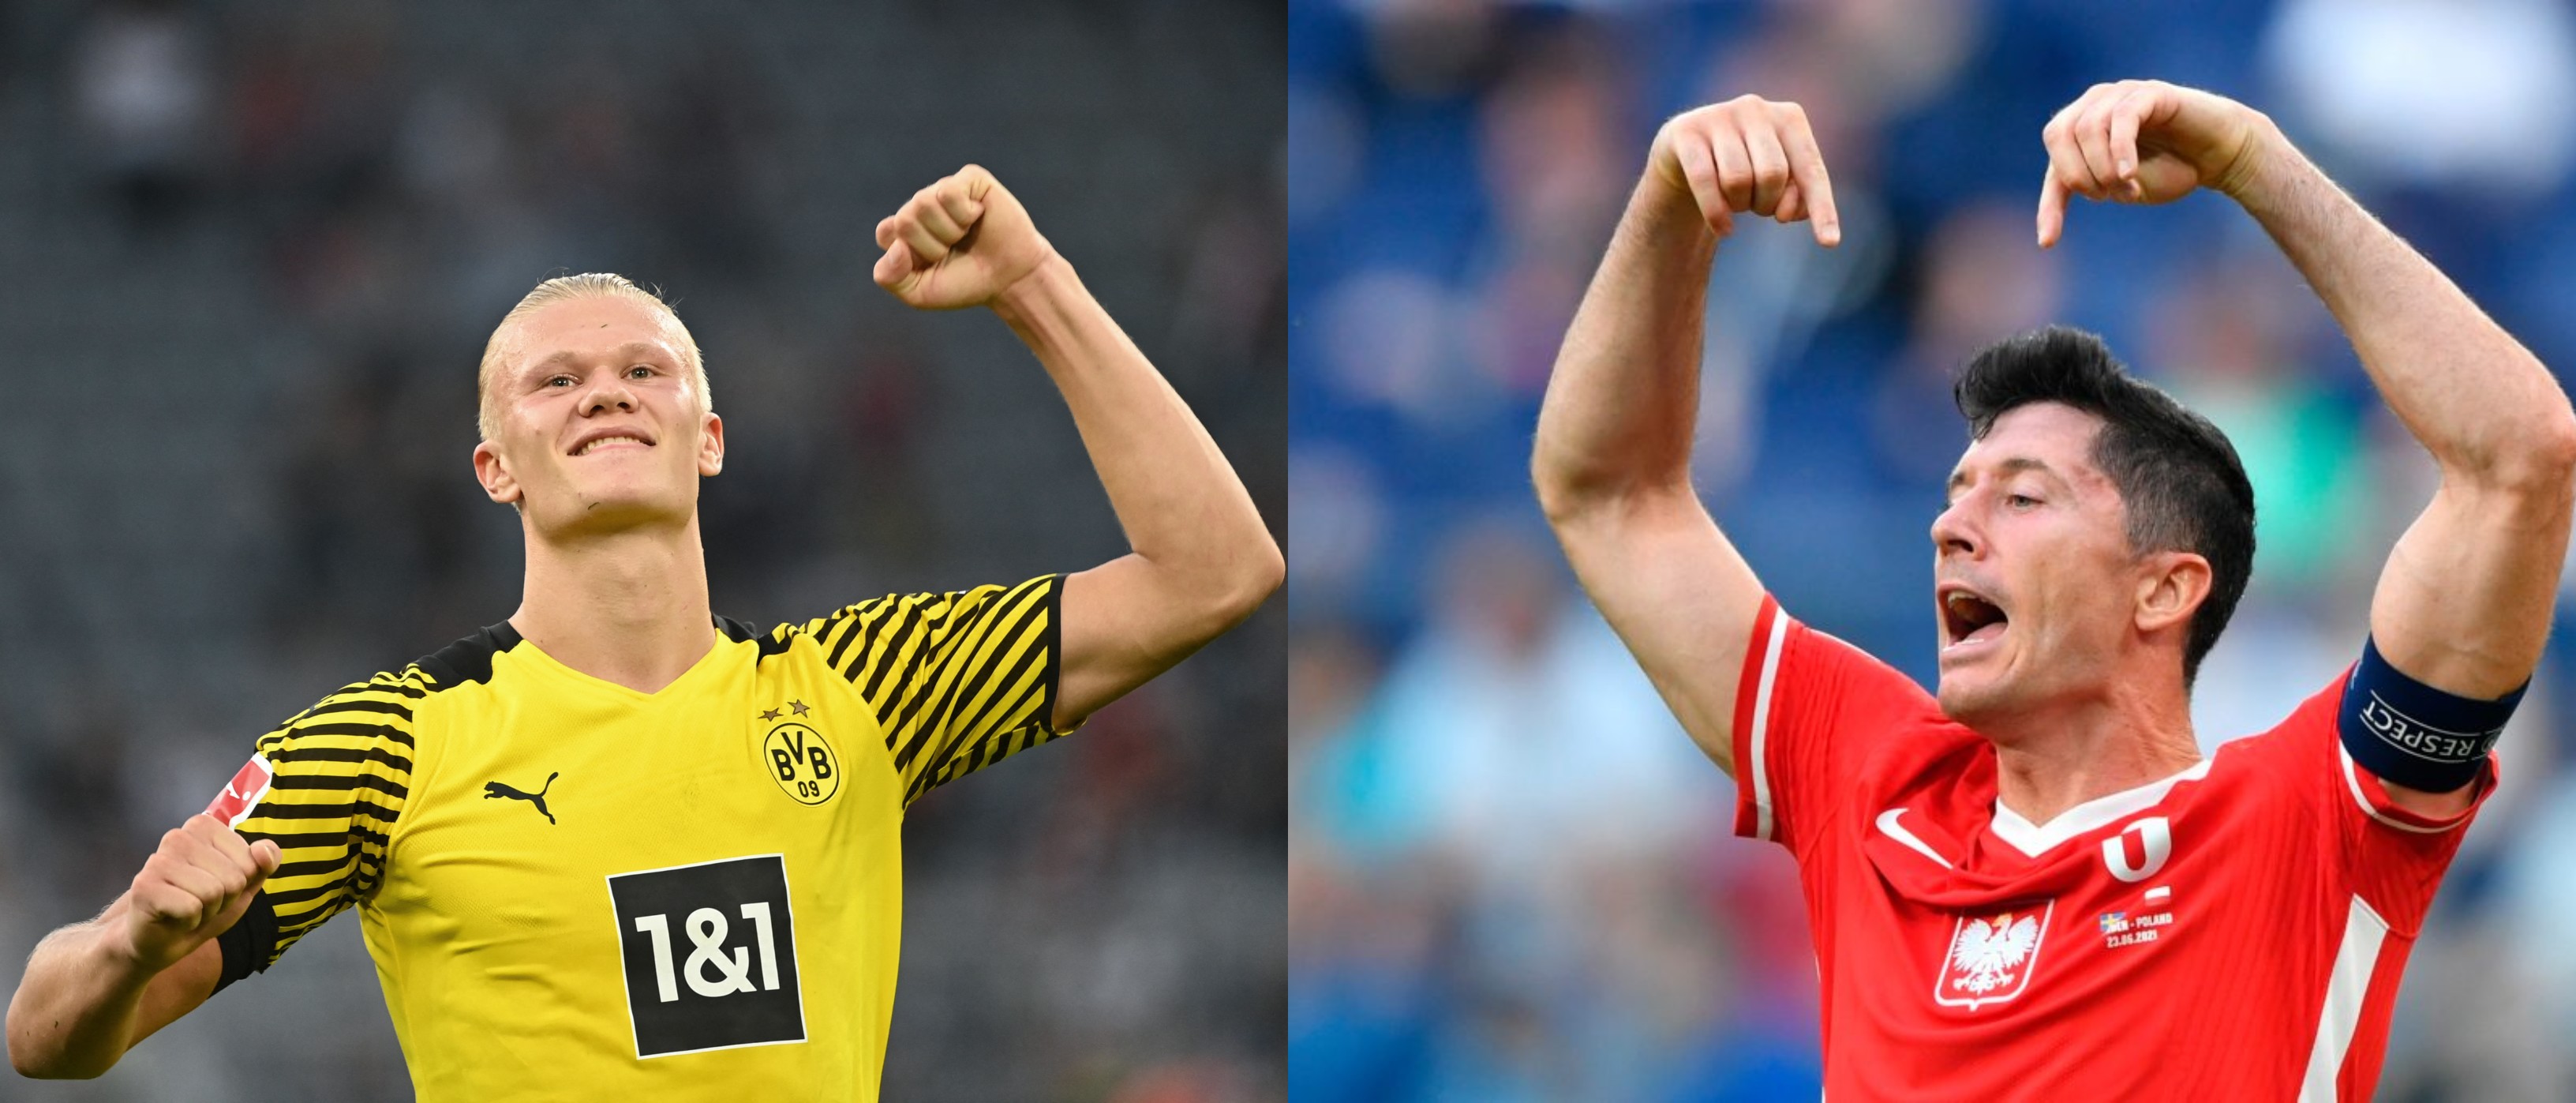 El noruego Erling Haaland, del Borussia Dortmund y Robert Lewandowski, del Bayern de Múnich, se enfrentarán por la Supercopa de Alemania. Fotos Prensa Libre: AFP y EFE.